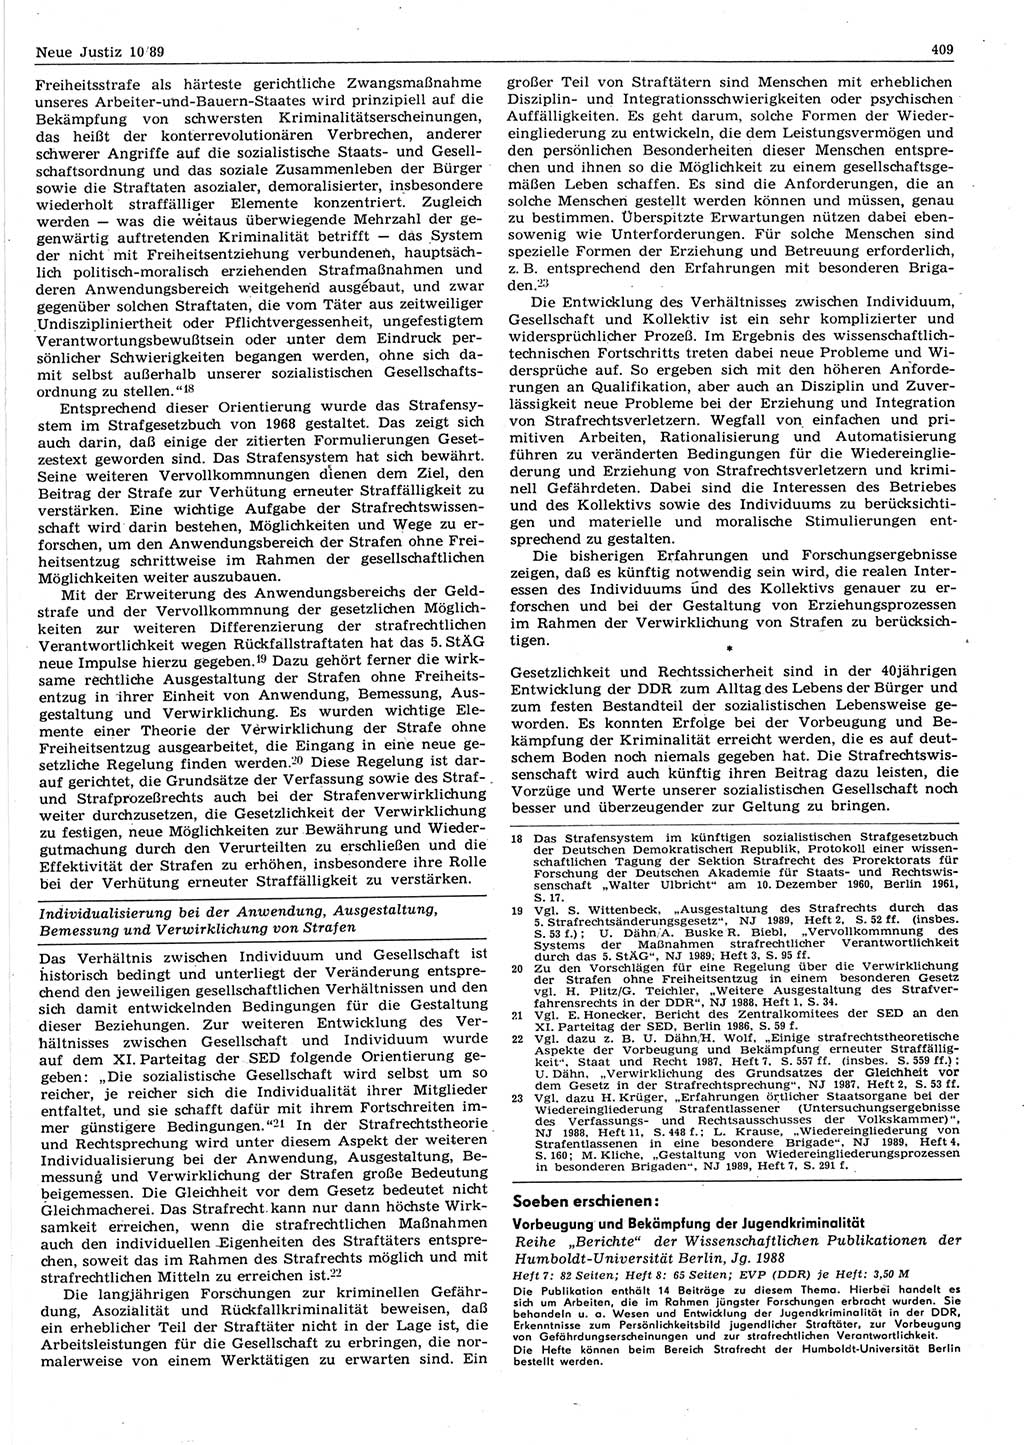 Neue Justiz (NJ), Zeitschrift für sozialistisches Recht und Gesetzlichkeit [Deutsche Demokratische Republik (DDR)], 43. Jahrgang 1989, Seite 409 (NJ DDR 1989, S. 409)